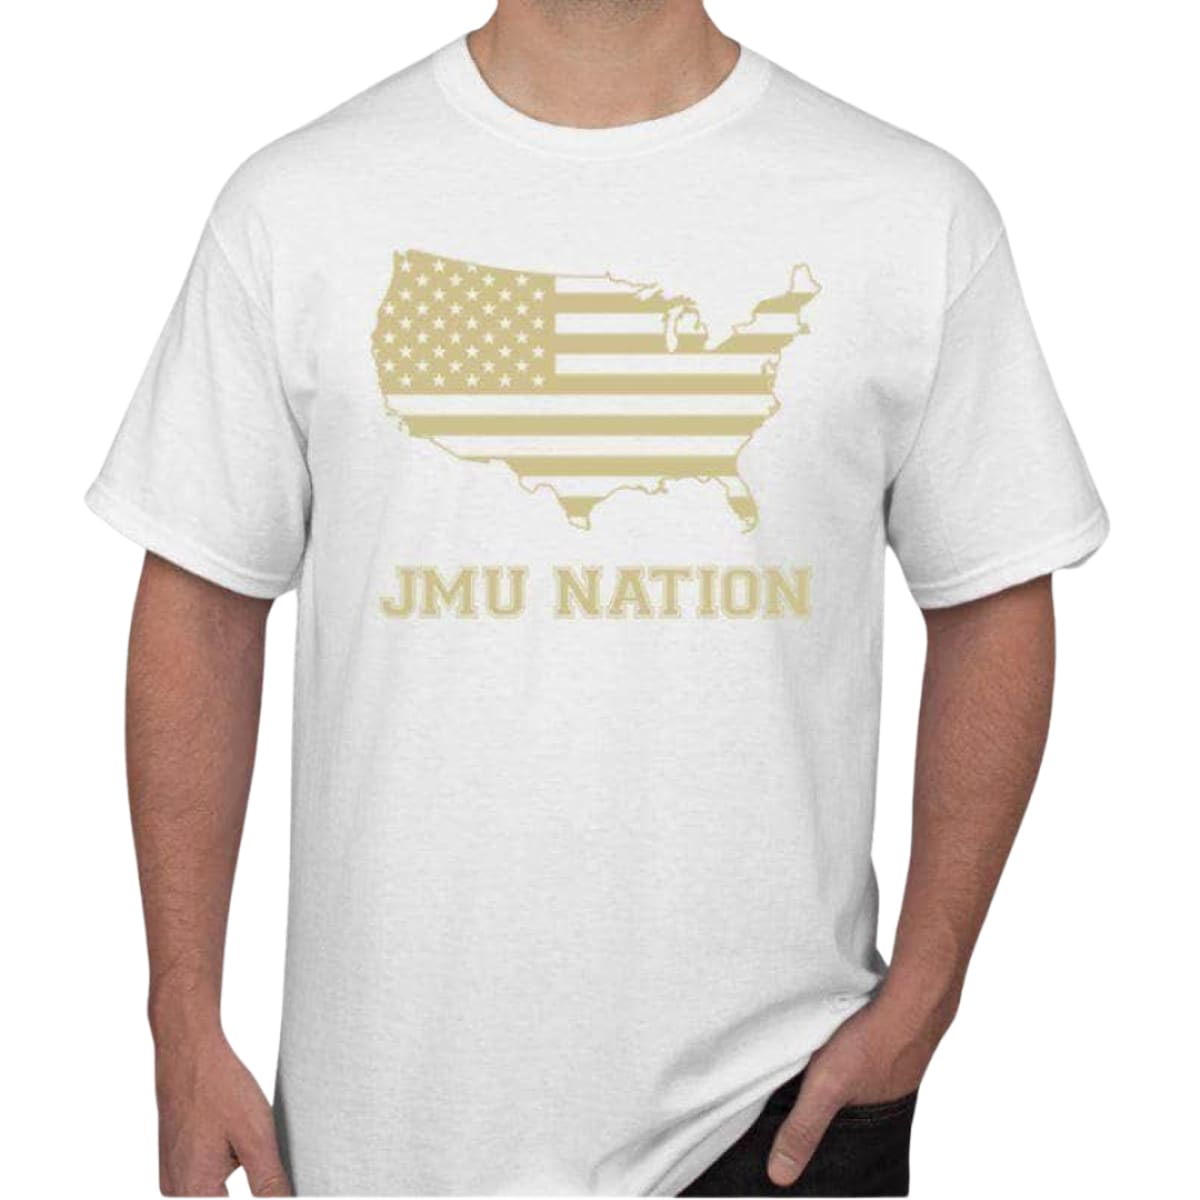 JMU Nation Men’s/Unisex Short Sleeve T-Shirt - S / White